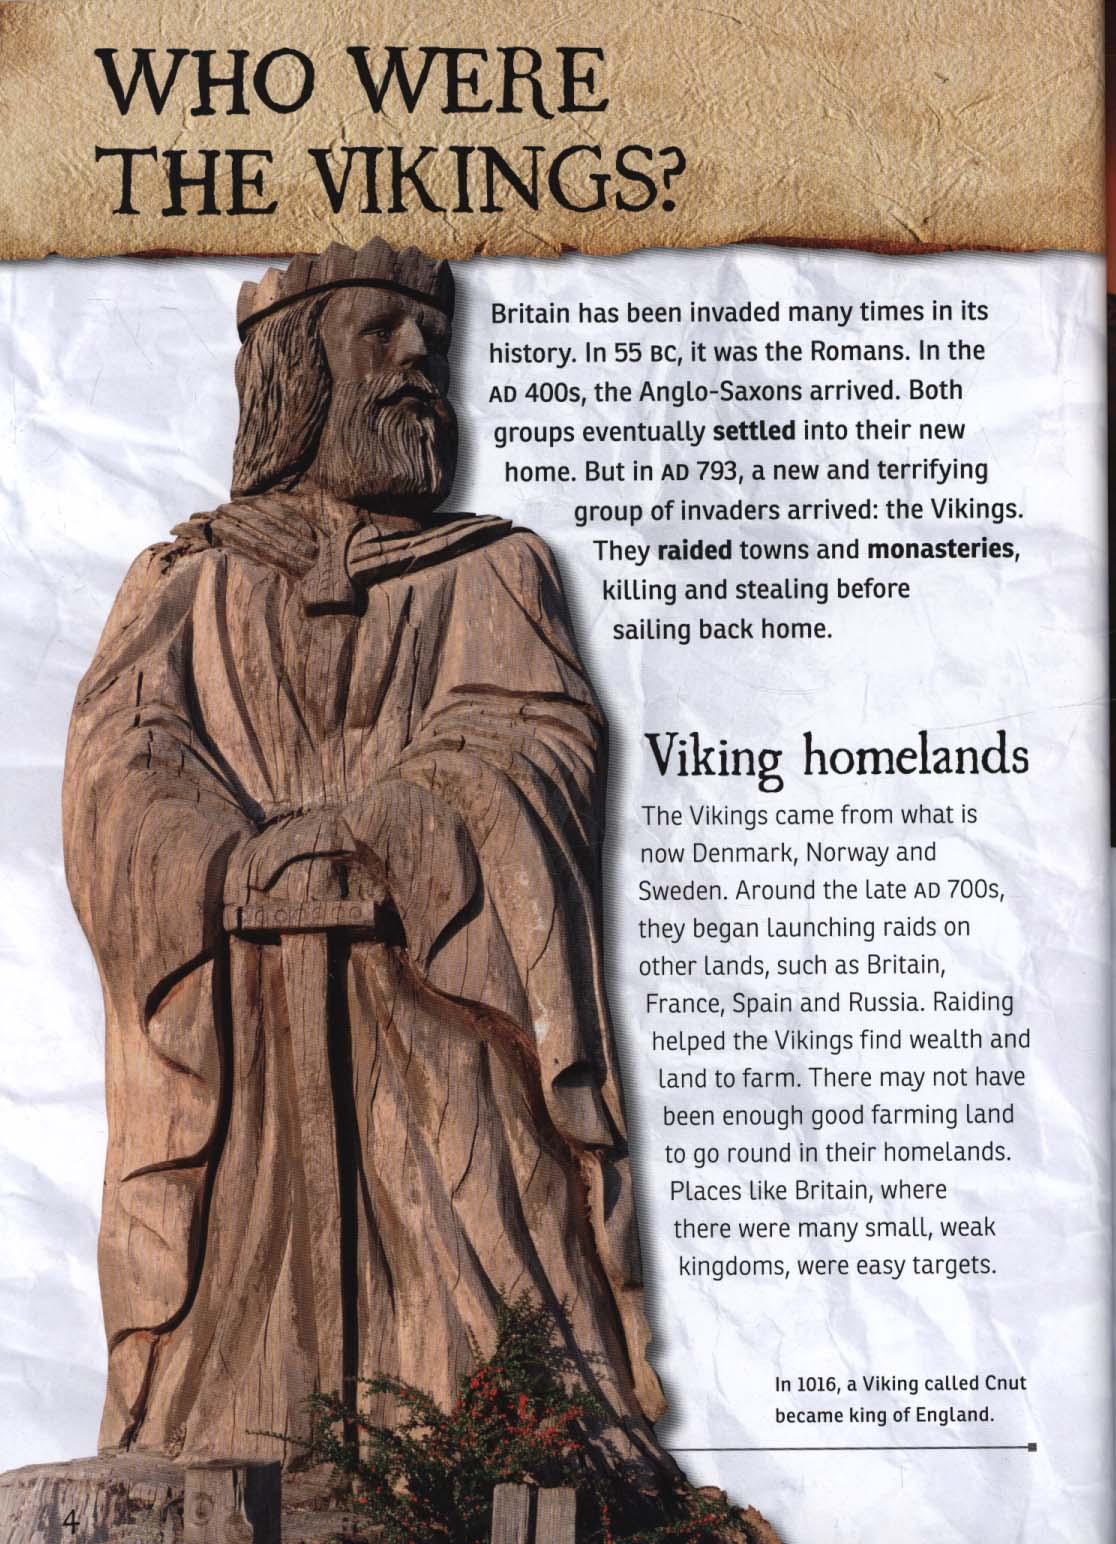 Viking Sites